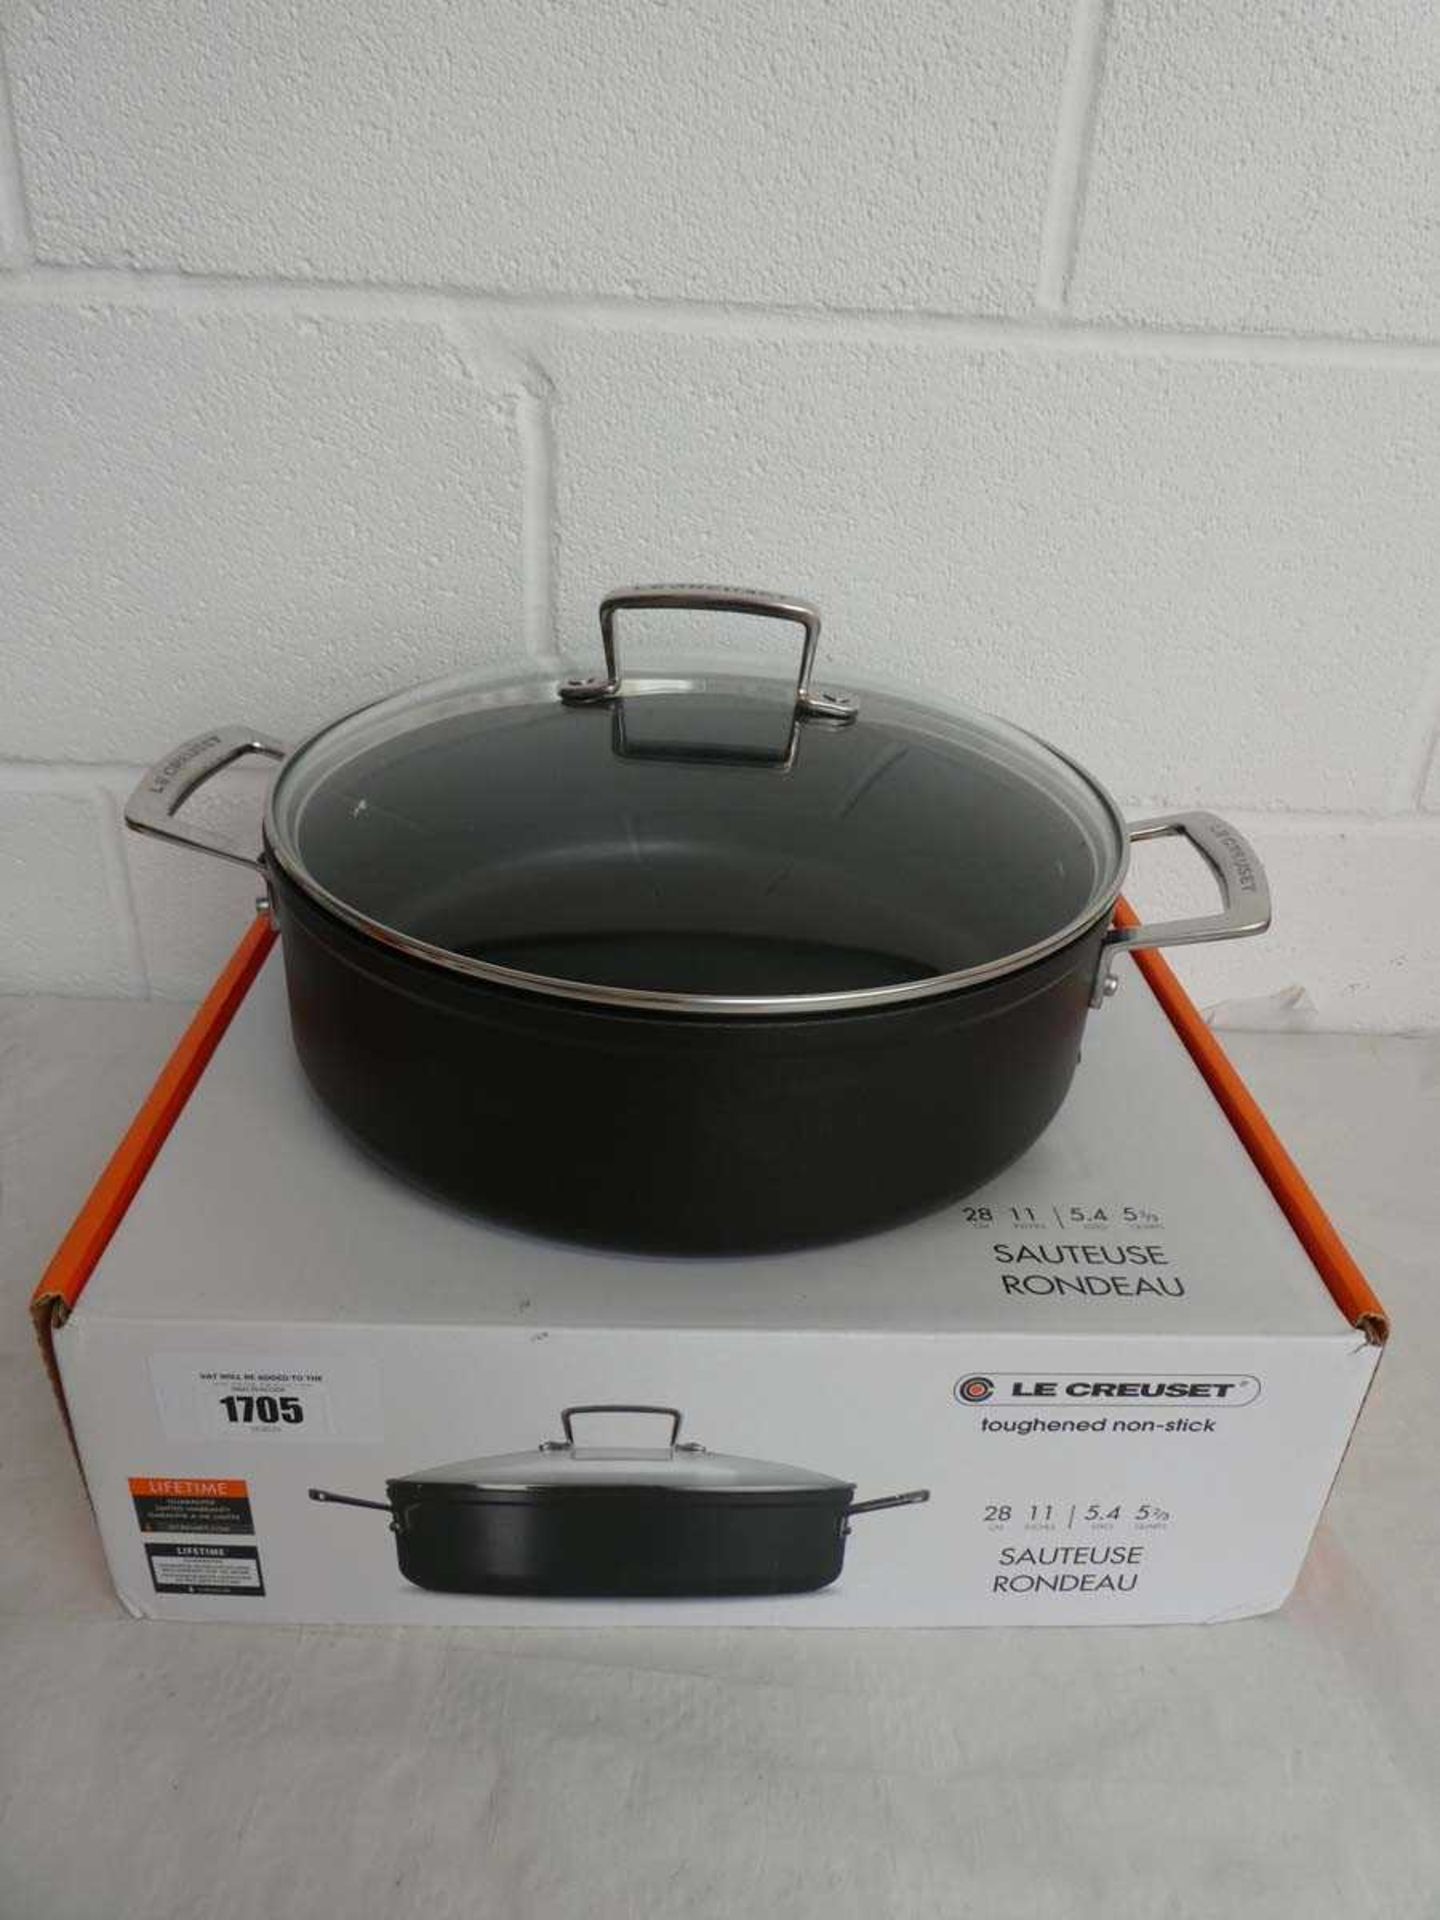 +VAT Le Creuset lidded sauteuse pan (28cm) in black, boxed